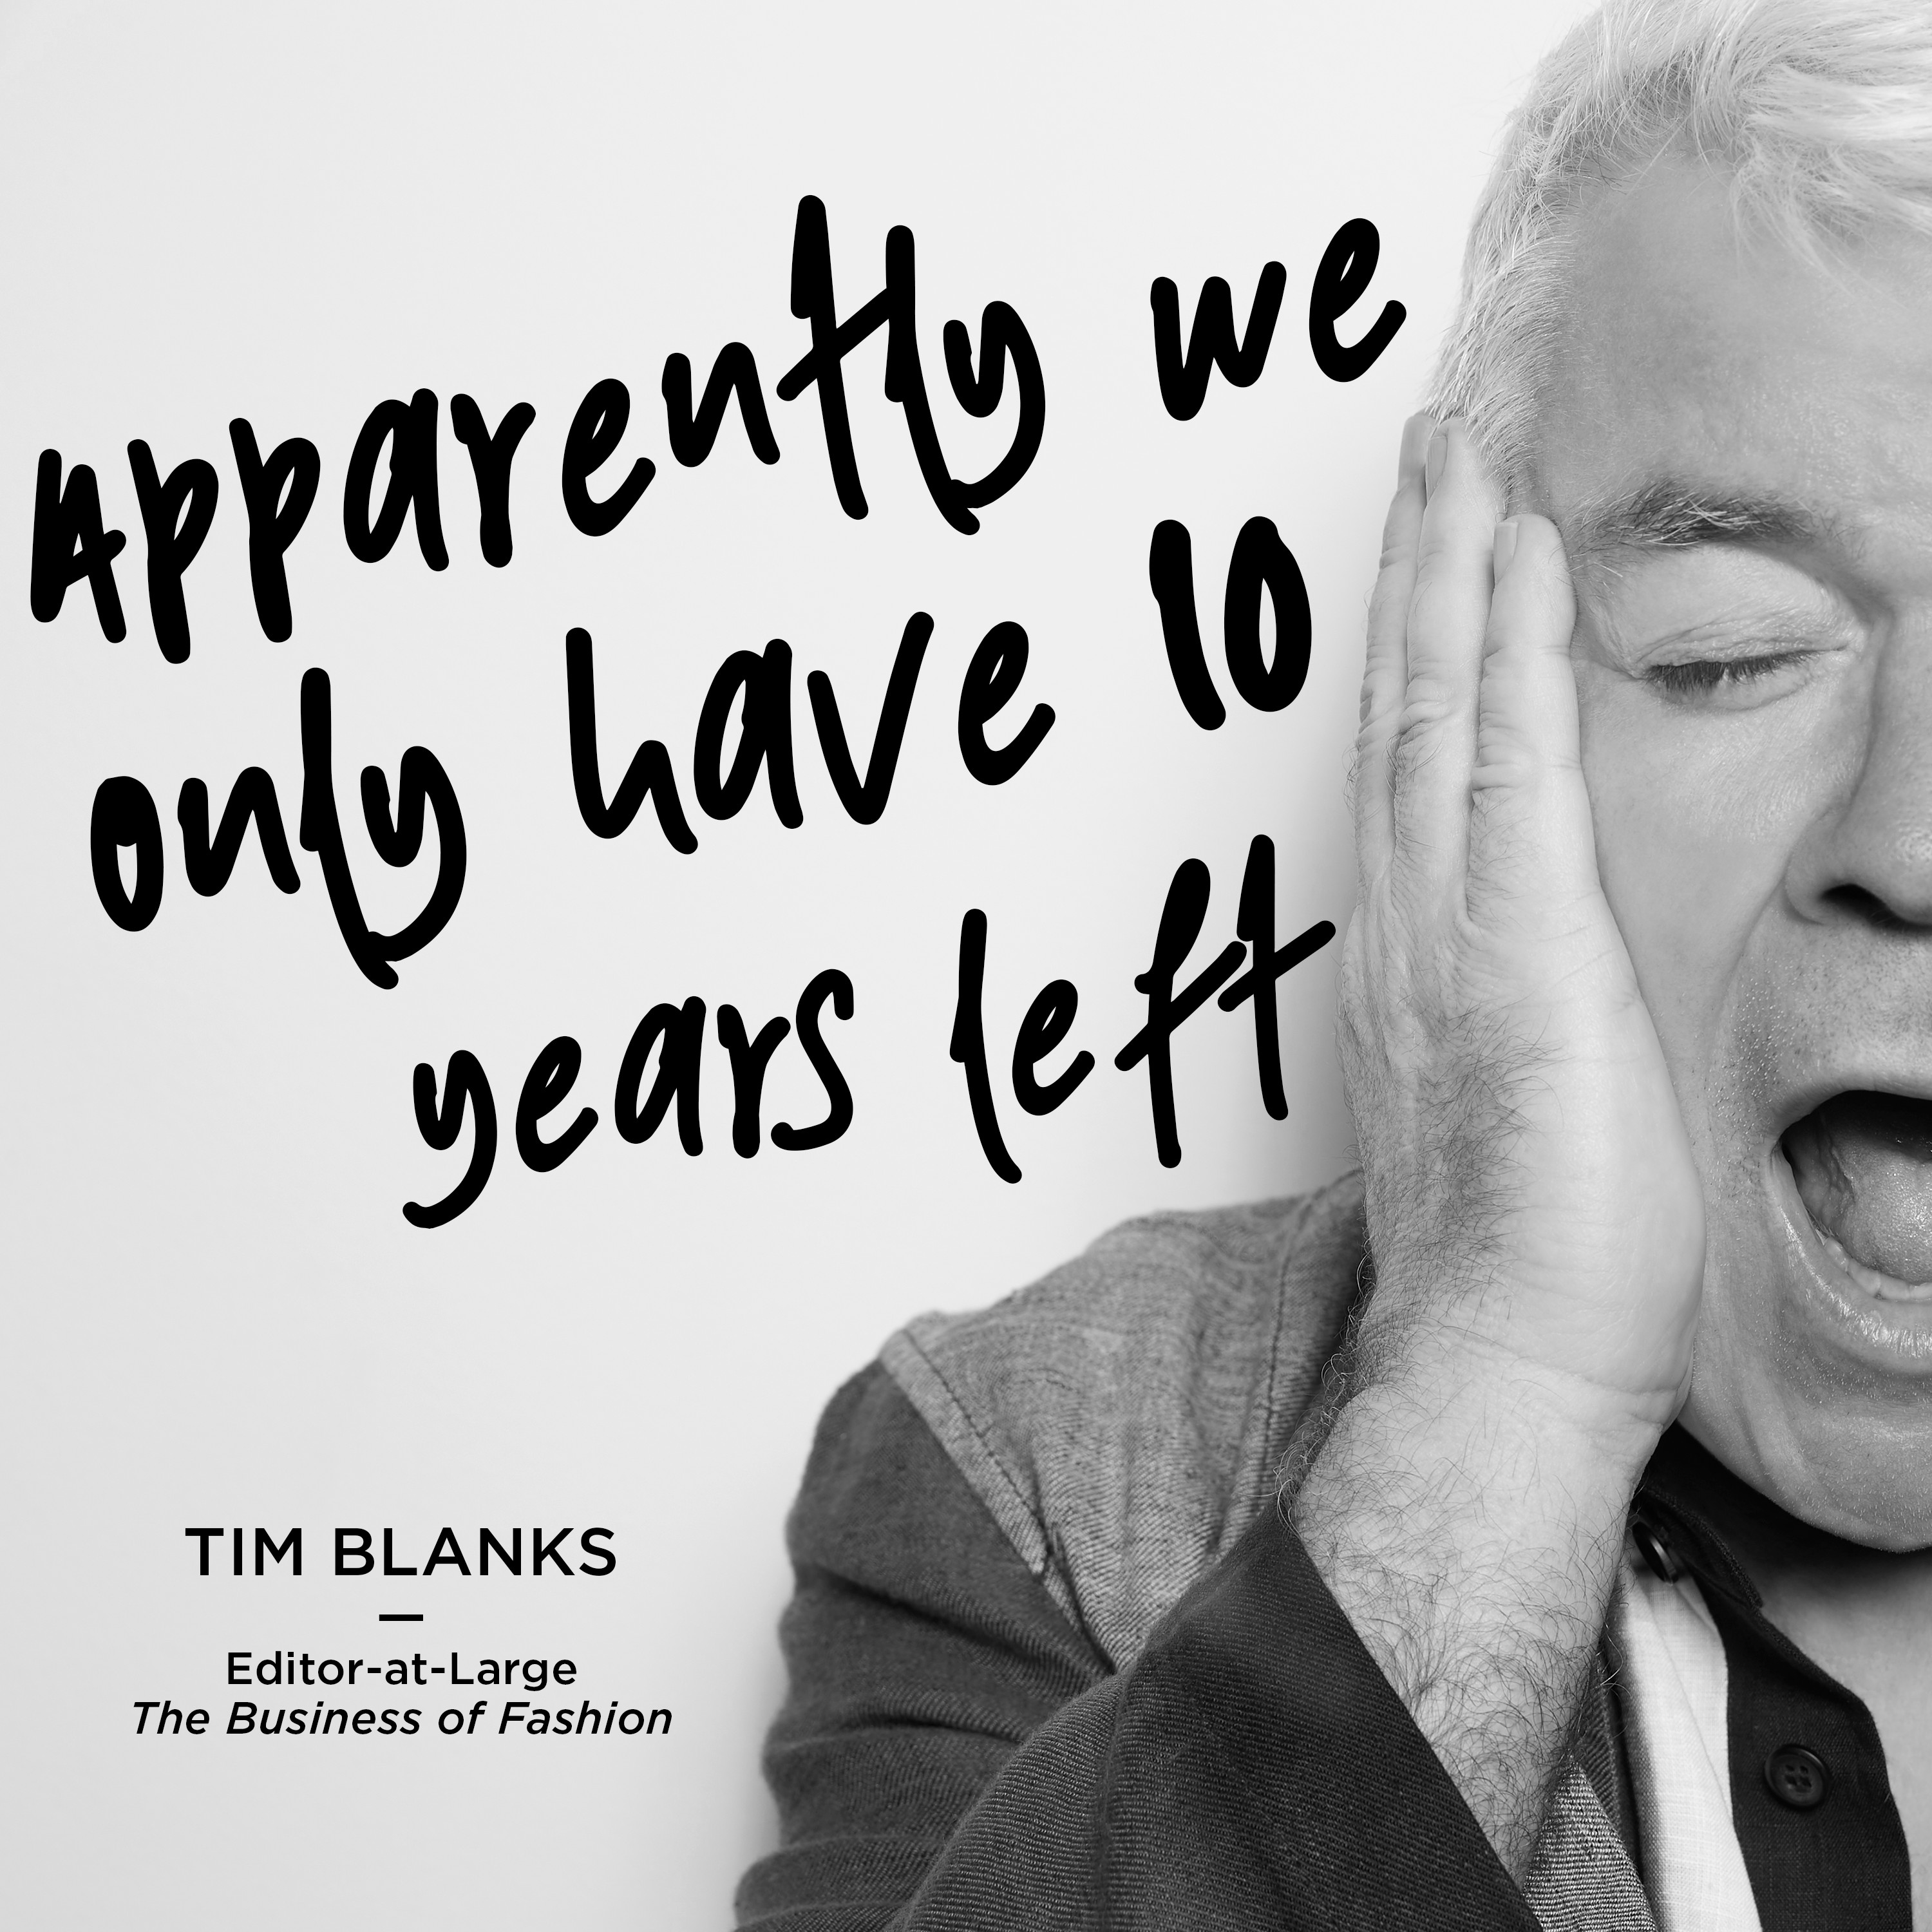 Aparentemente só temos mais dez anos, diz Tim Blanks na campanha #BeyondNextSeason (Foto: Divulgação)